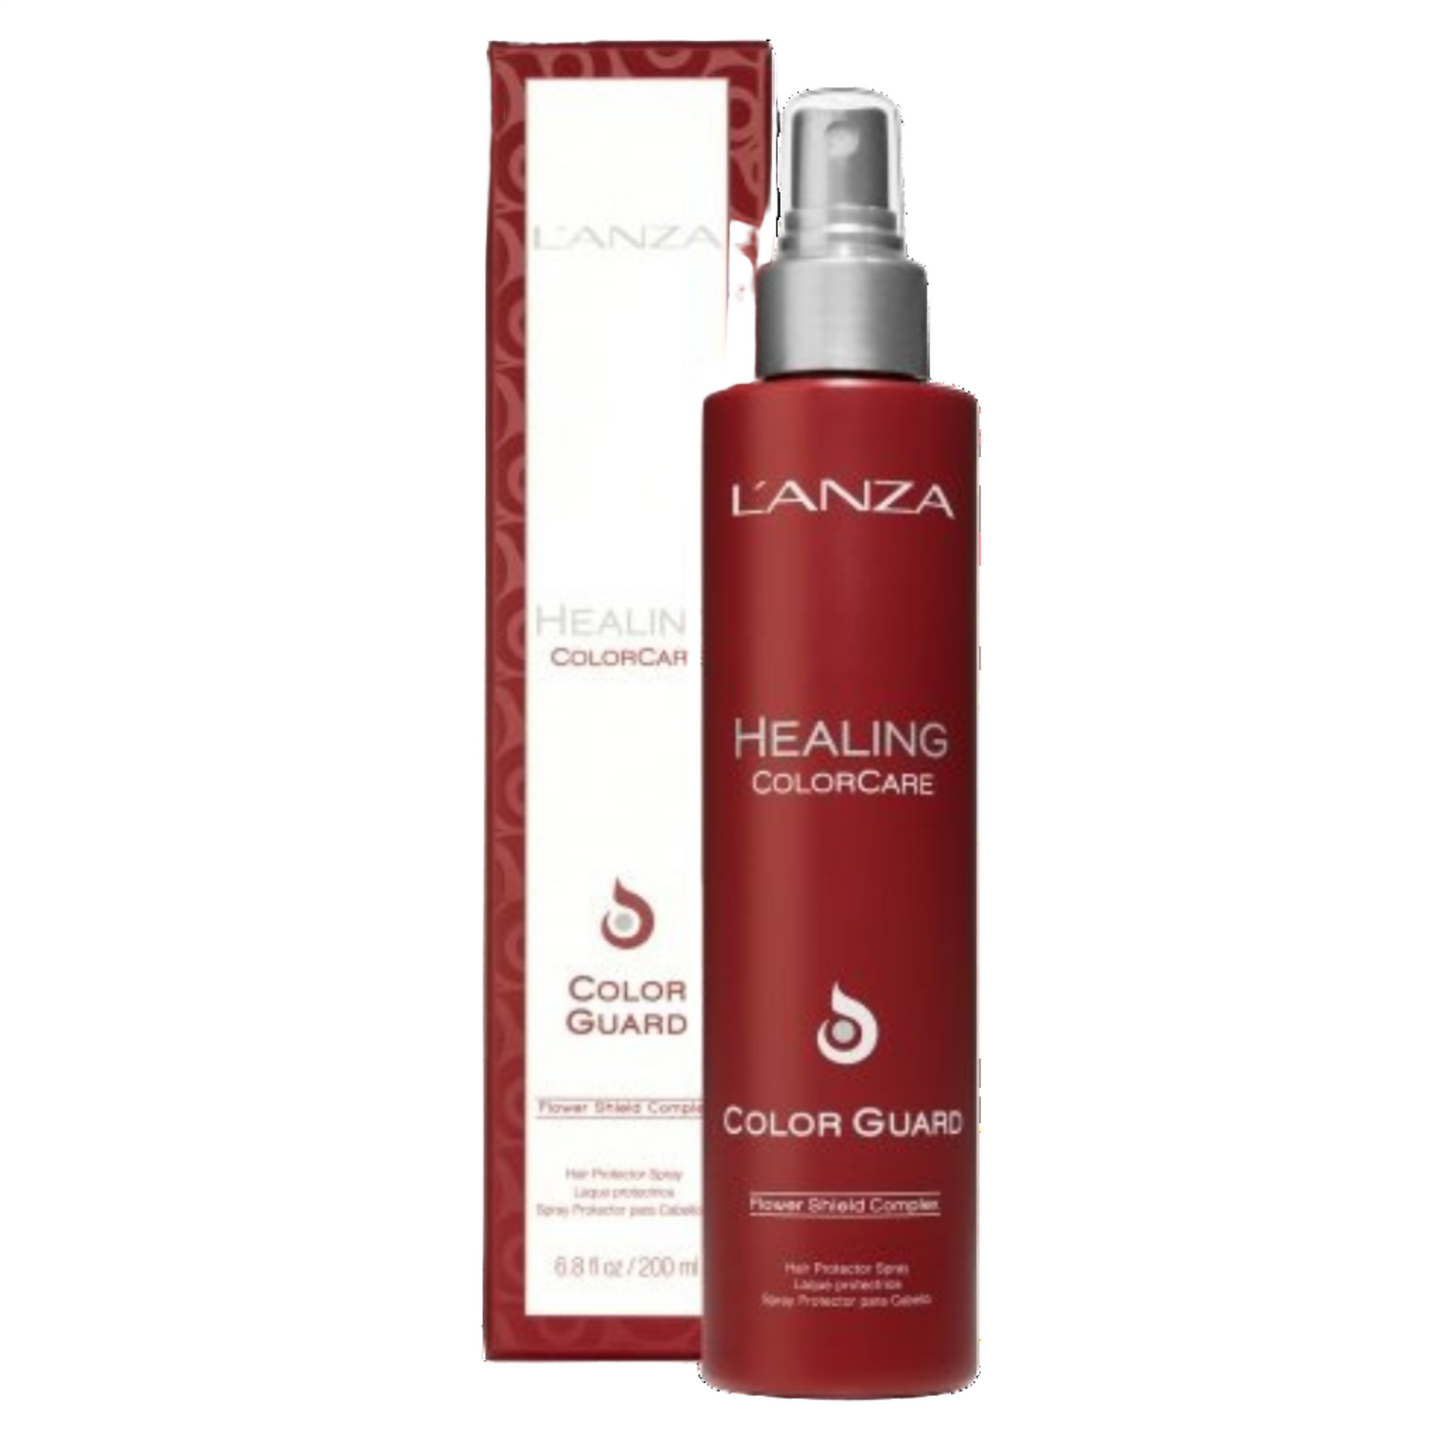 L'anza - Healing Colorcare Color Guard Oil 200ml